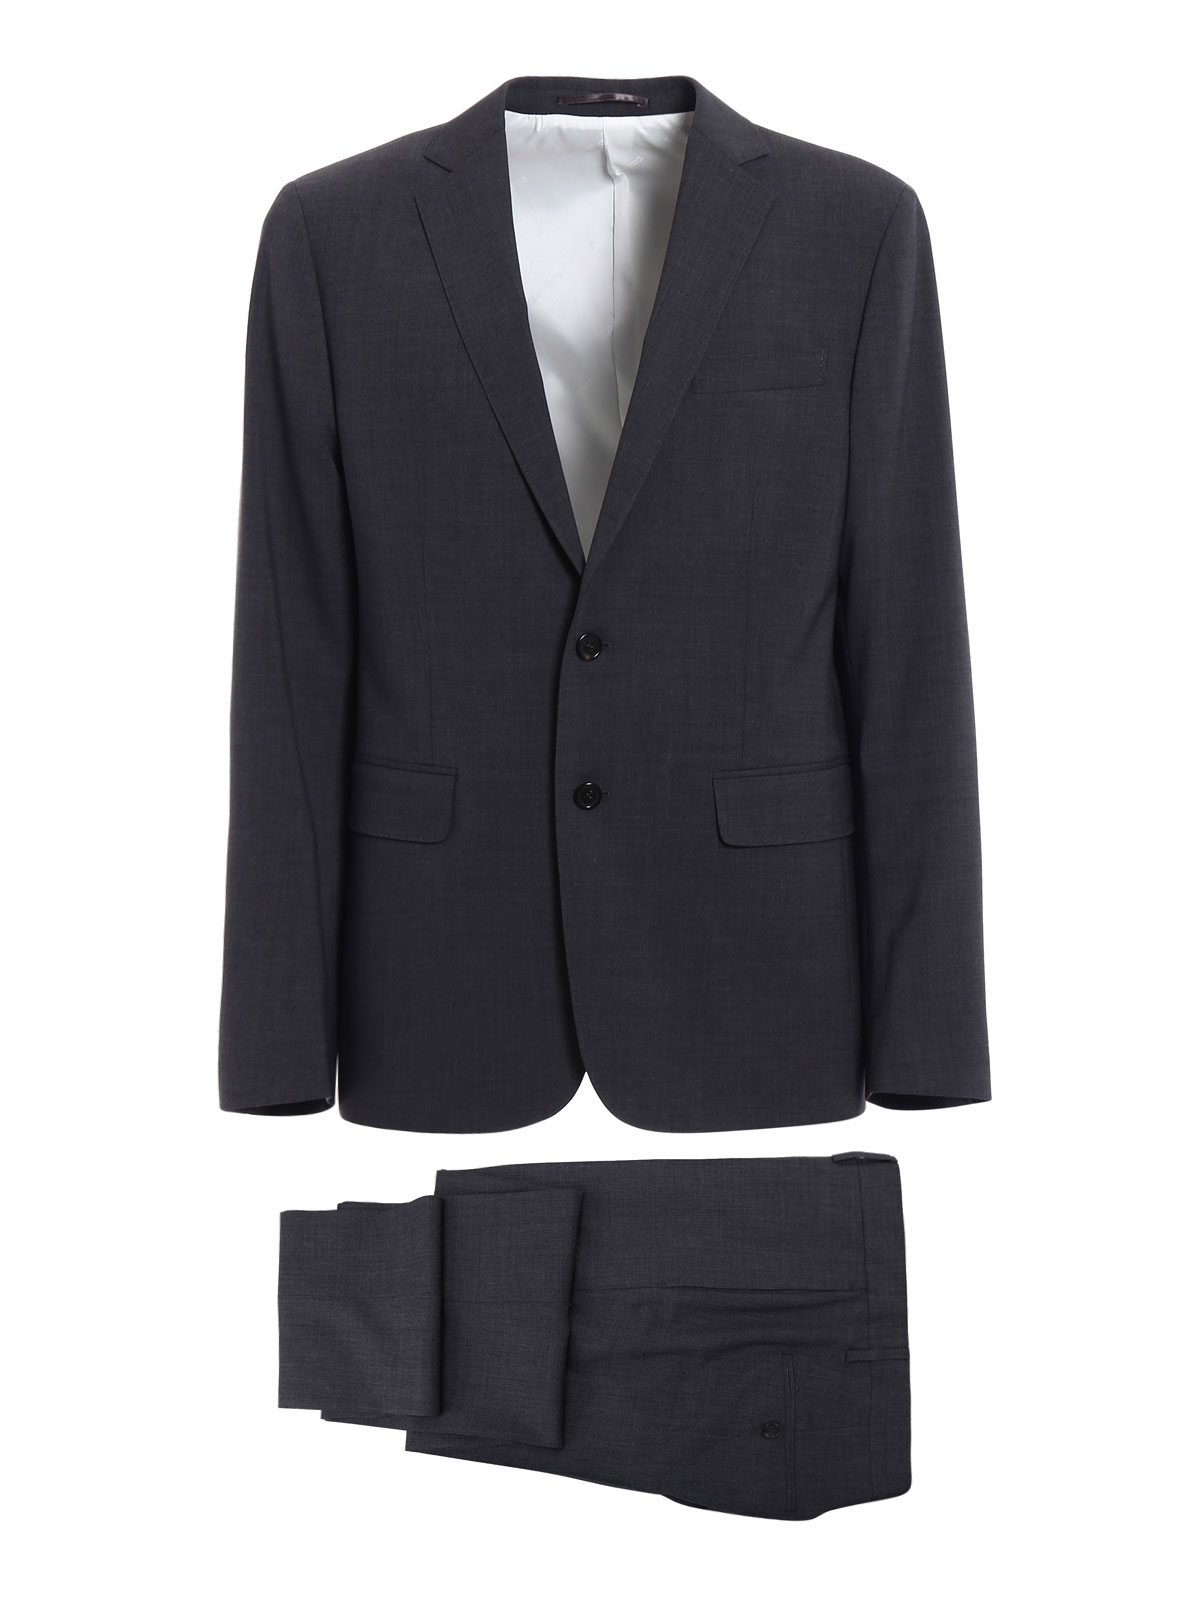 Dsquared2 - Paris grey tailored suit - formal suits - S74FT0299S40320860